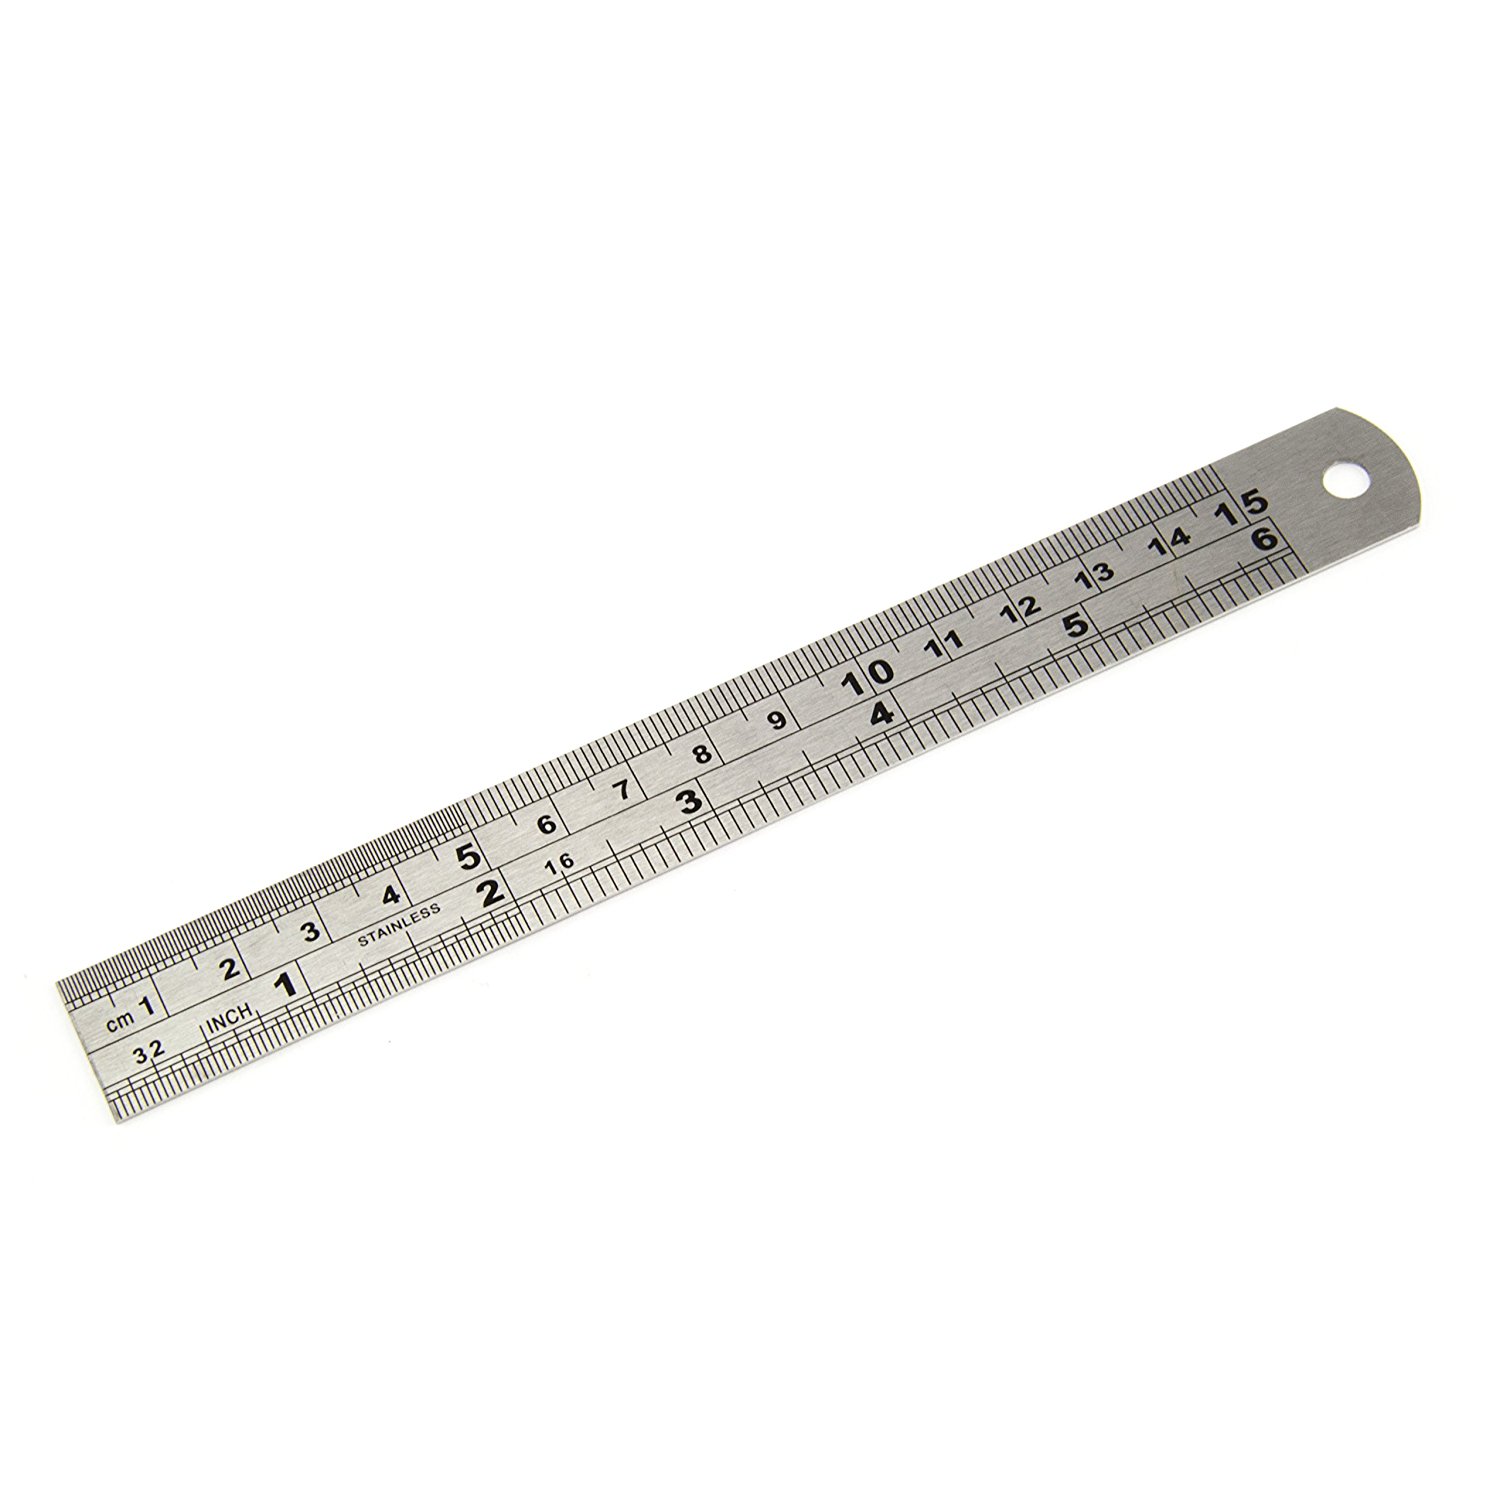 15 cm / 150mm Stainless Steel Metal Ruler/ Rule (20mm Wide) Metric ...